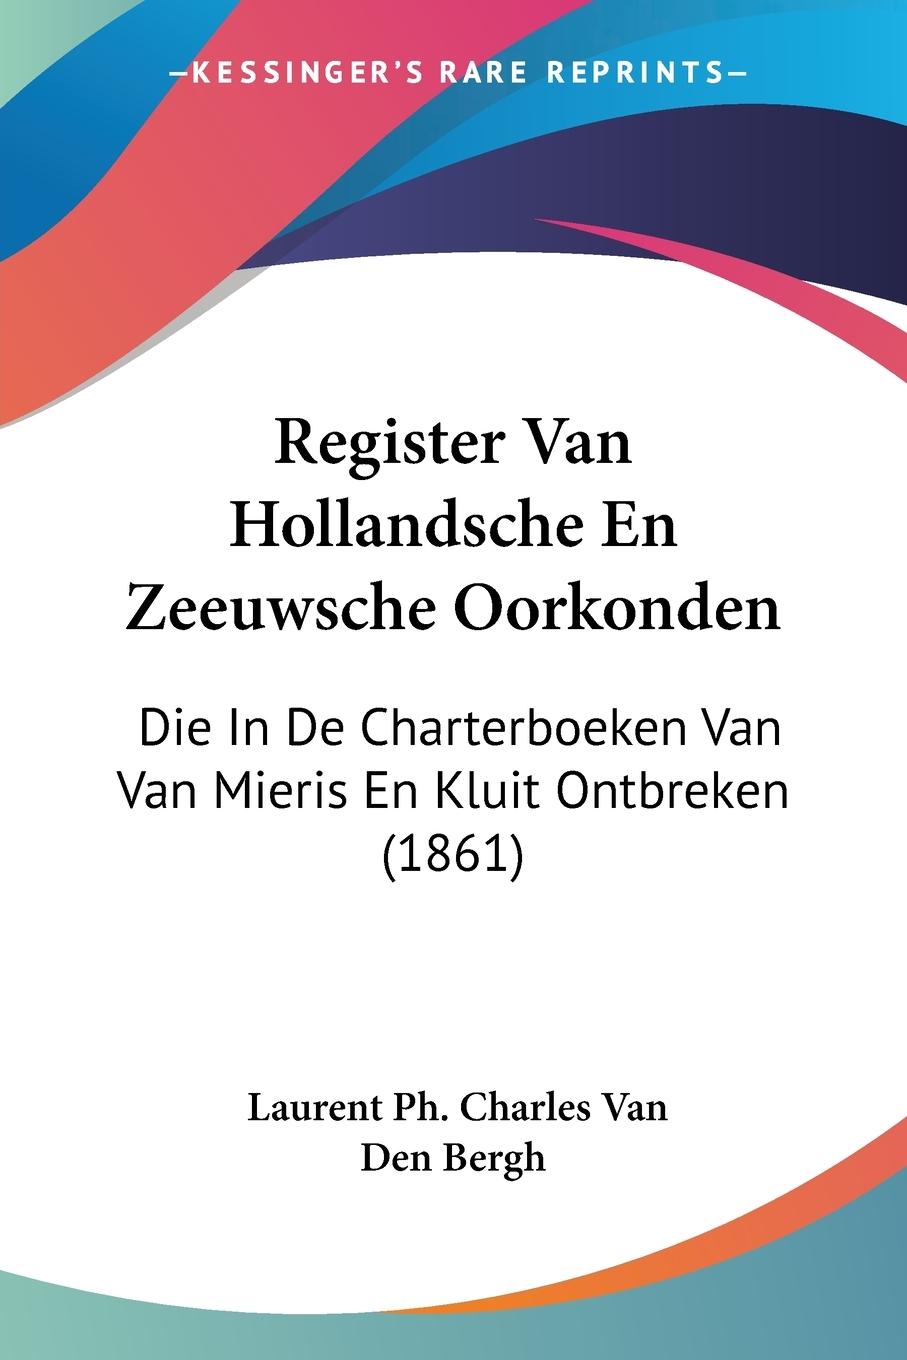 Register Van Hollandsche En Zeeuwsche Oorkonden - Bergh, Laurent Ph. Charles van den